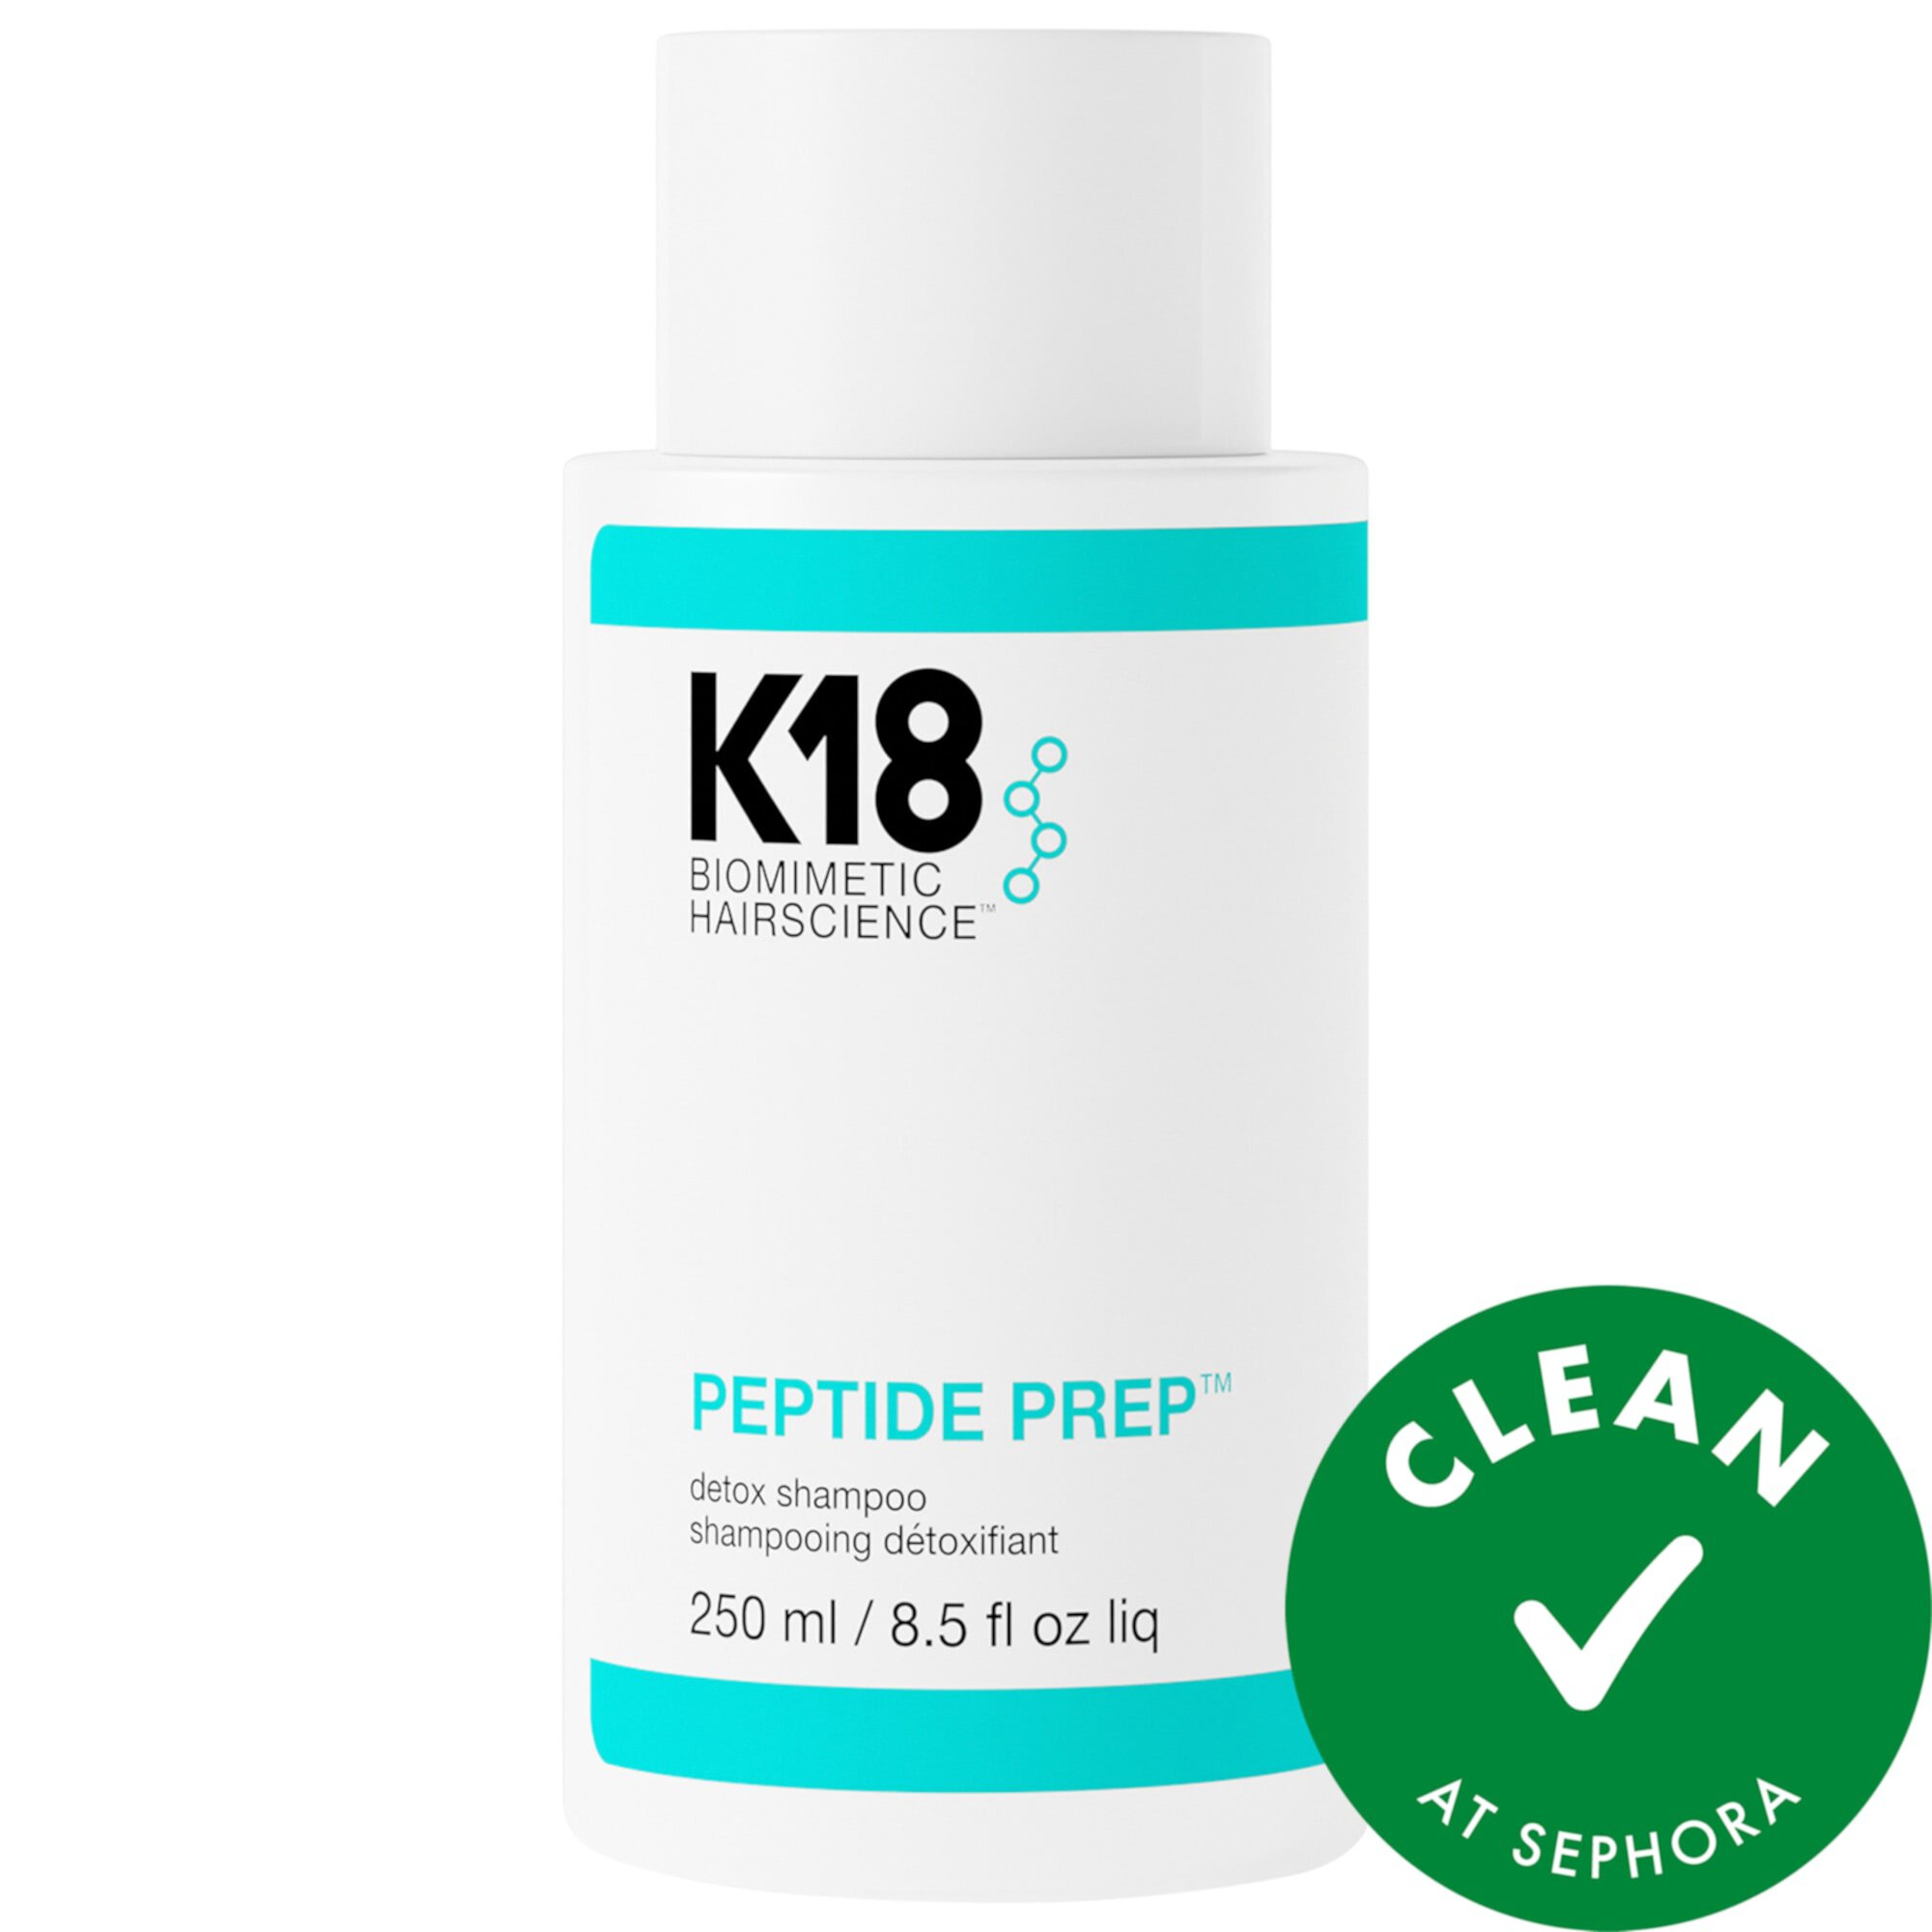 PEPTIDE PREP™ Осветляющий детокс-шампунь K18 Biomimetic Hairscience